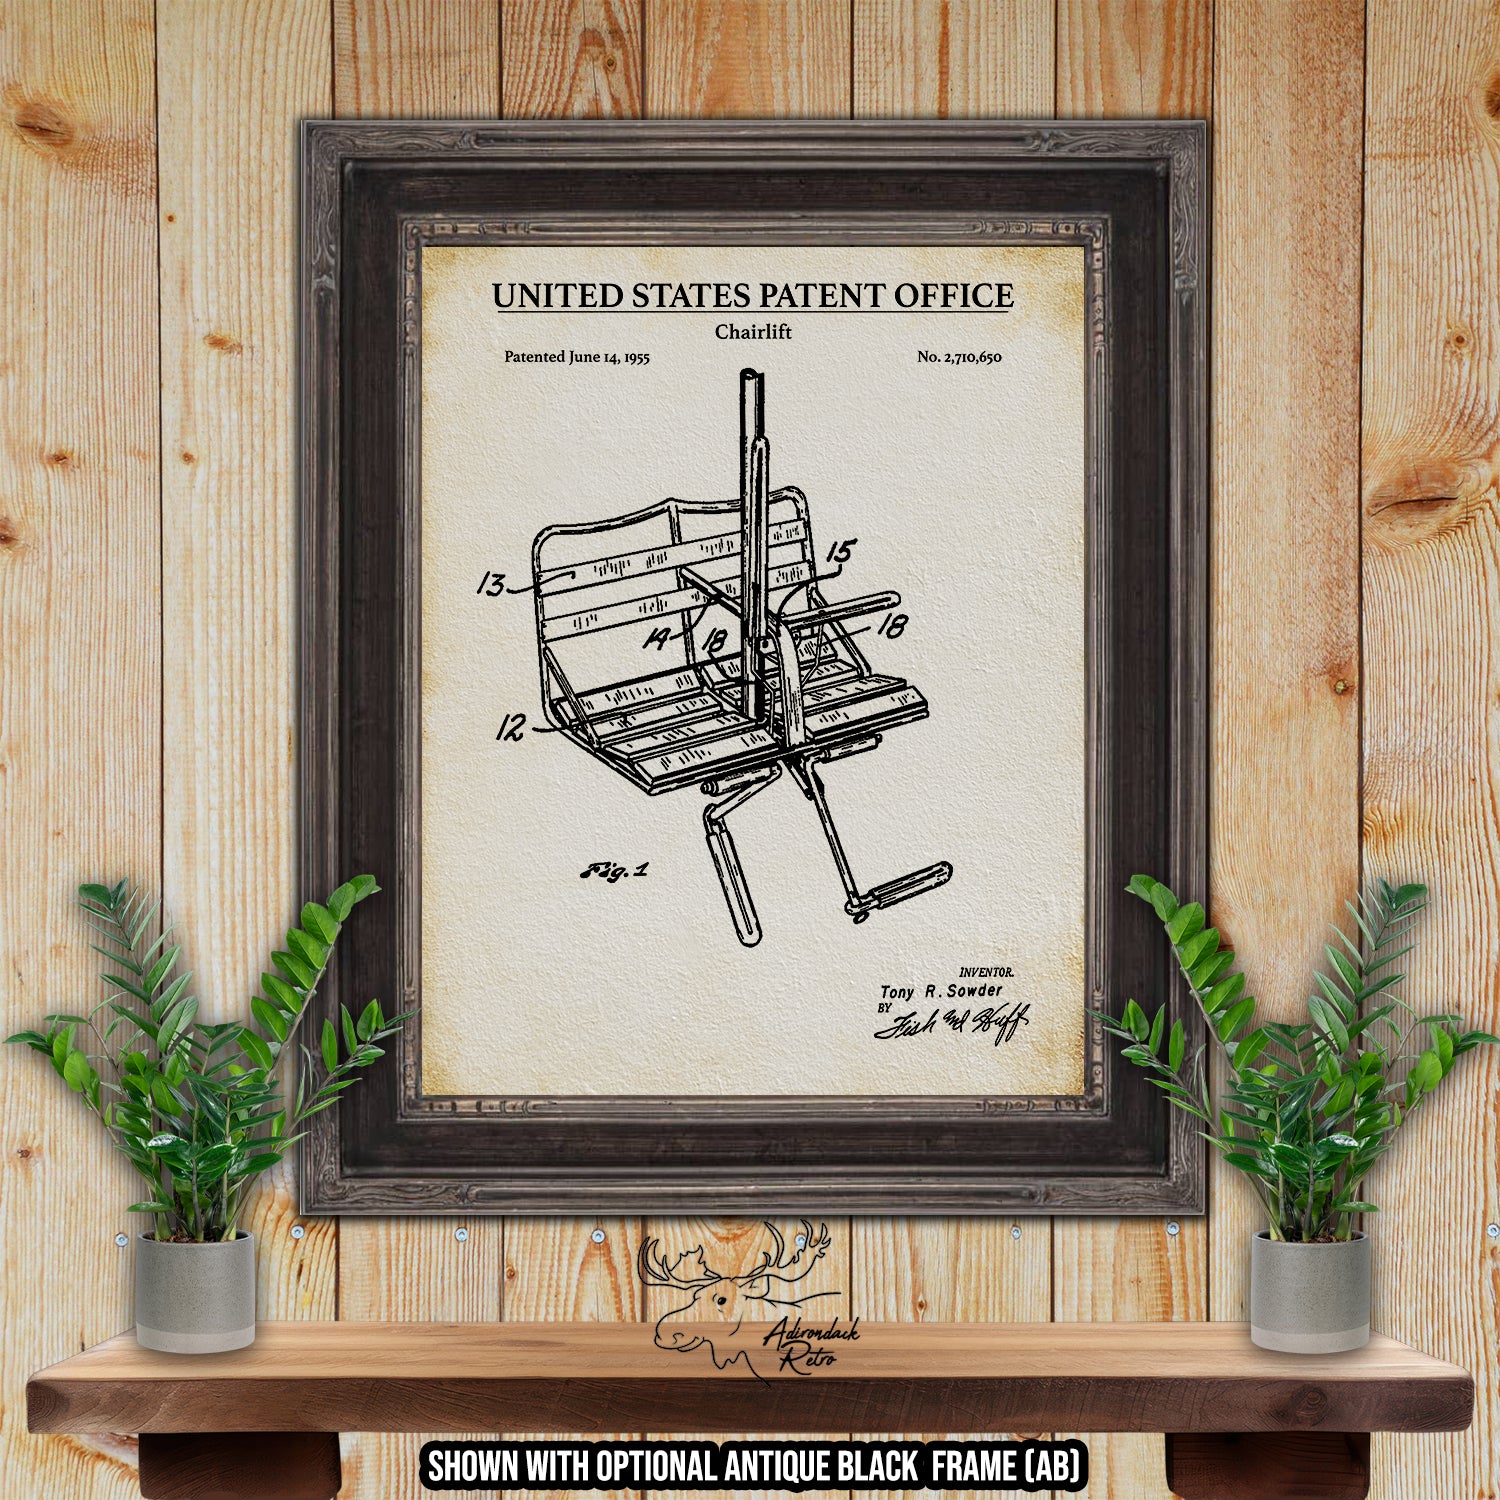 Chairlift 1955 Patent Print at Adirondack Retro